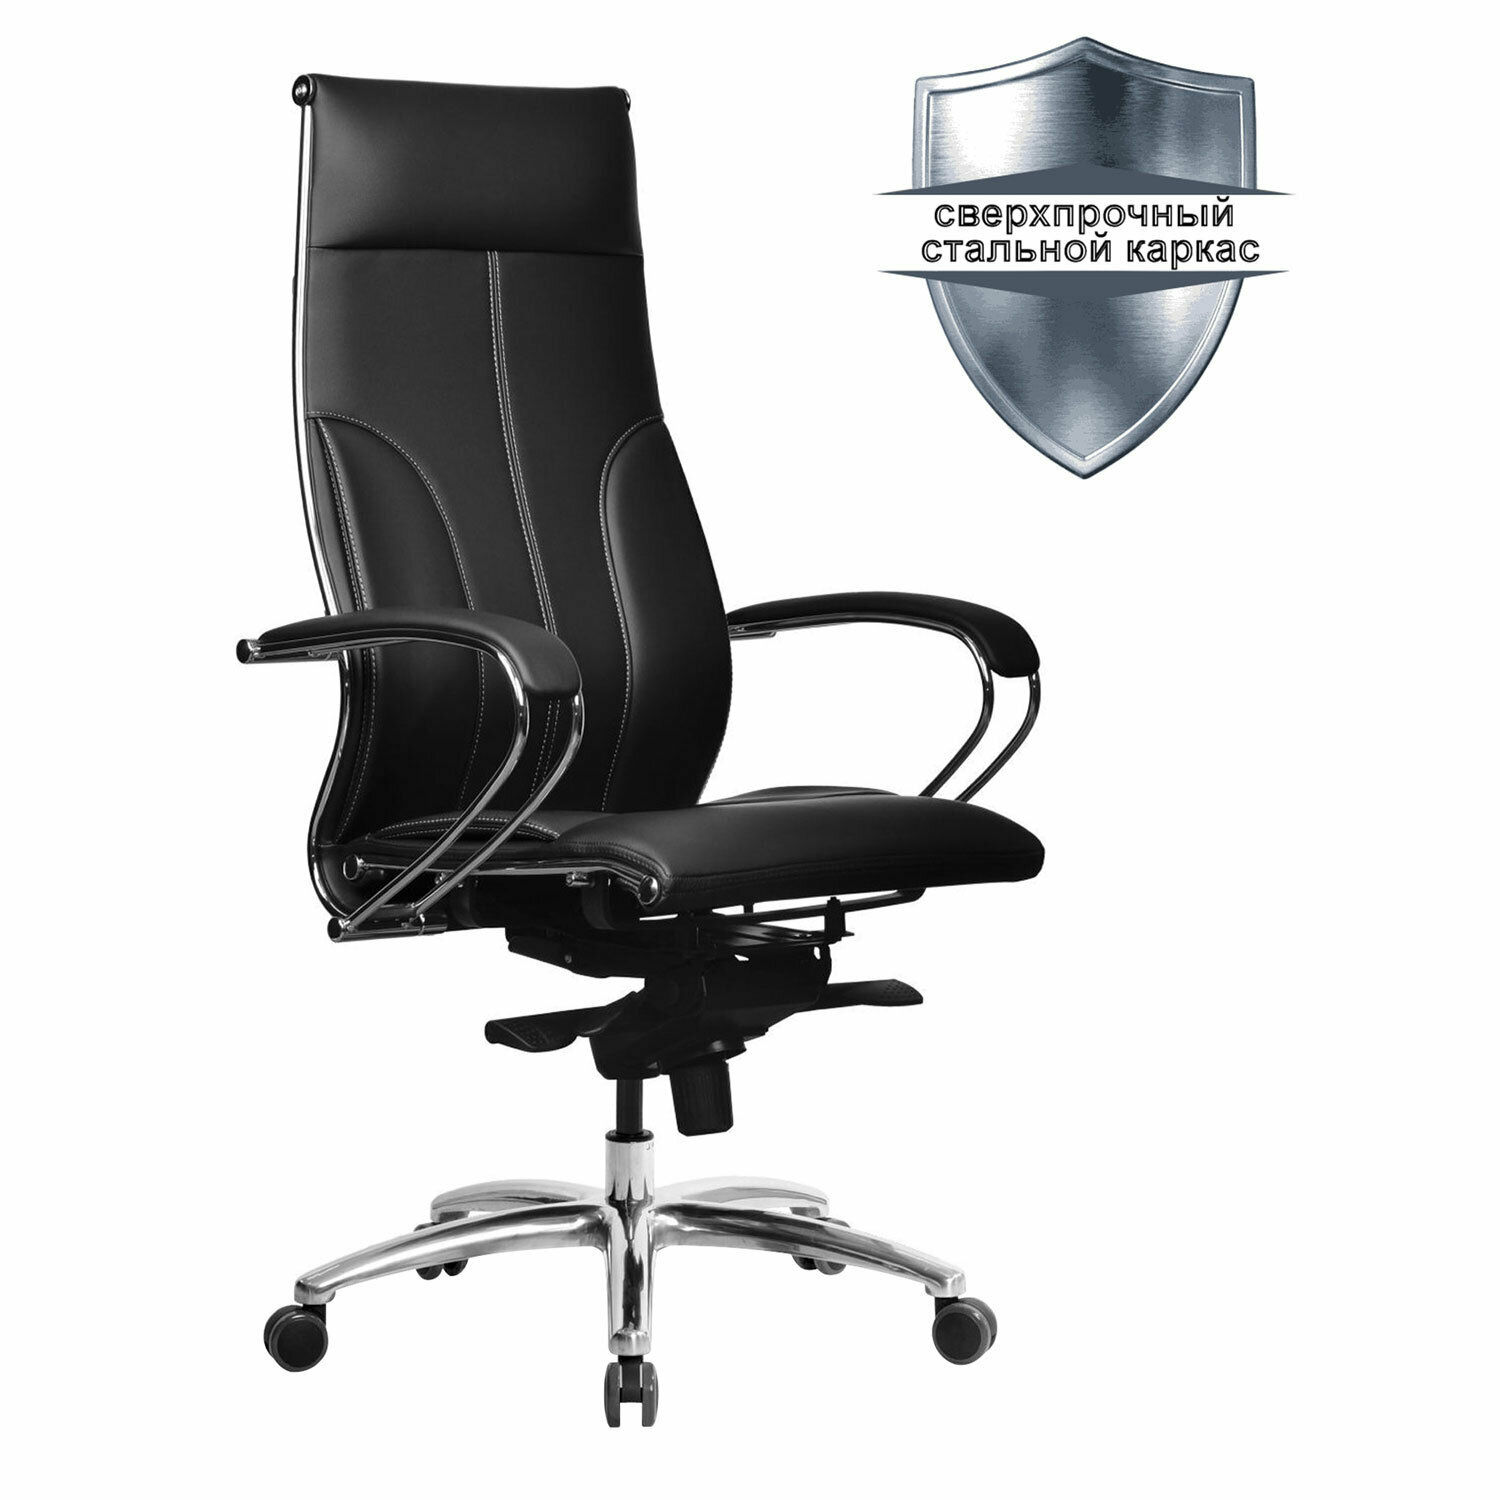 Кресло офисное метта «SAMURAI» Lux, экокожа, регулируемое сиденье, черное /Квант продажи 1 ед./